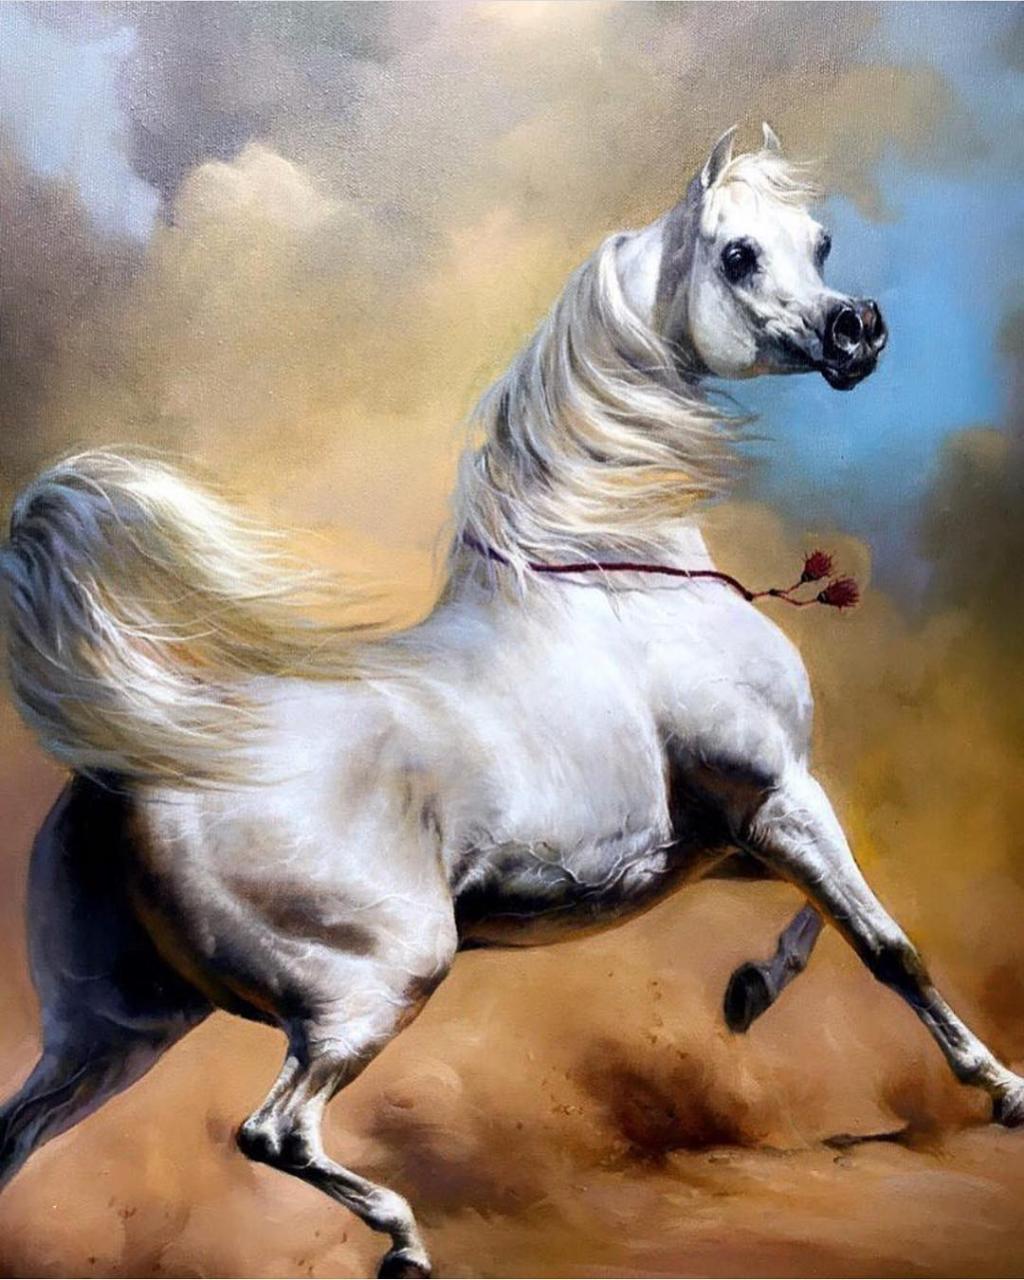 صور خيل عربي اصيل , اجمل صور الخيول العربية - اعتذار و اسف